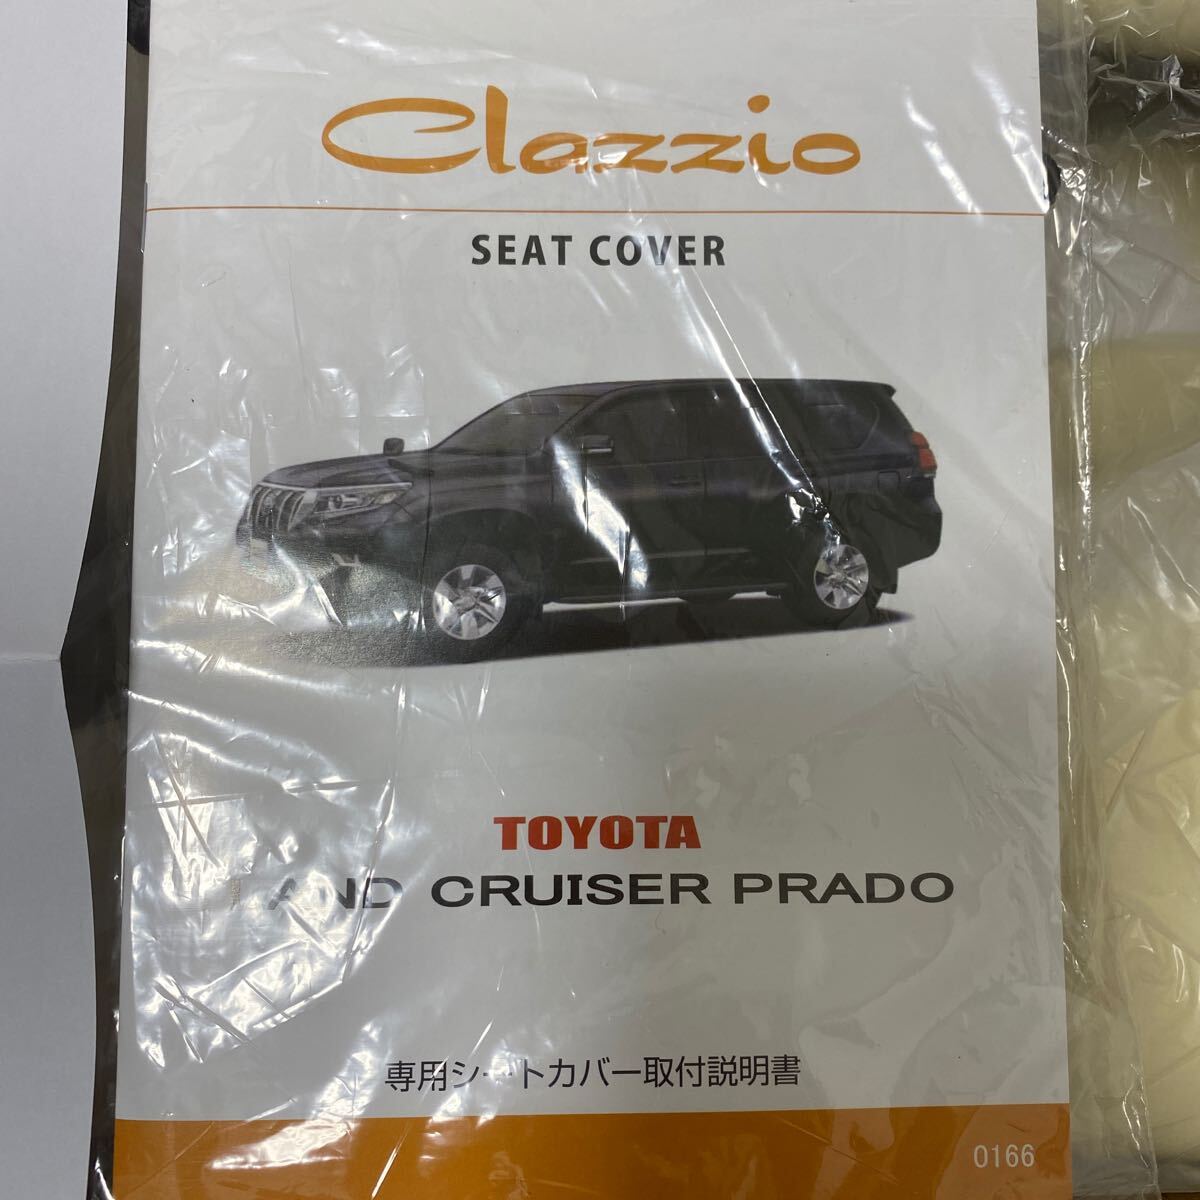  новый товар не использовался TRJ150/GDJ150 Land Cruiser Prado Clazzio чехол для сиденья 5 посадочных мест R3/6~ Clazzio Junior слоновая кость 